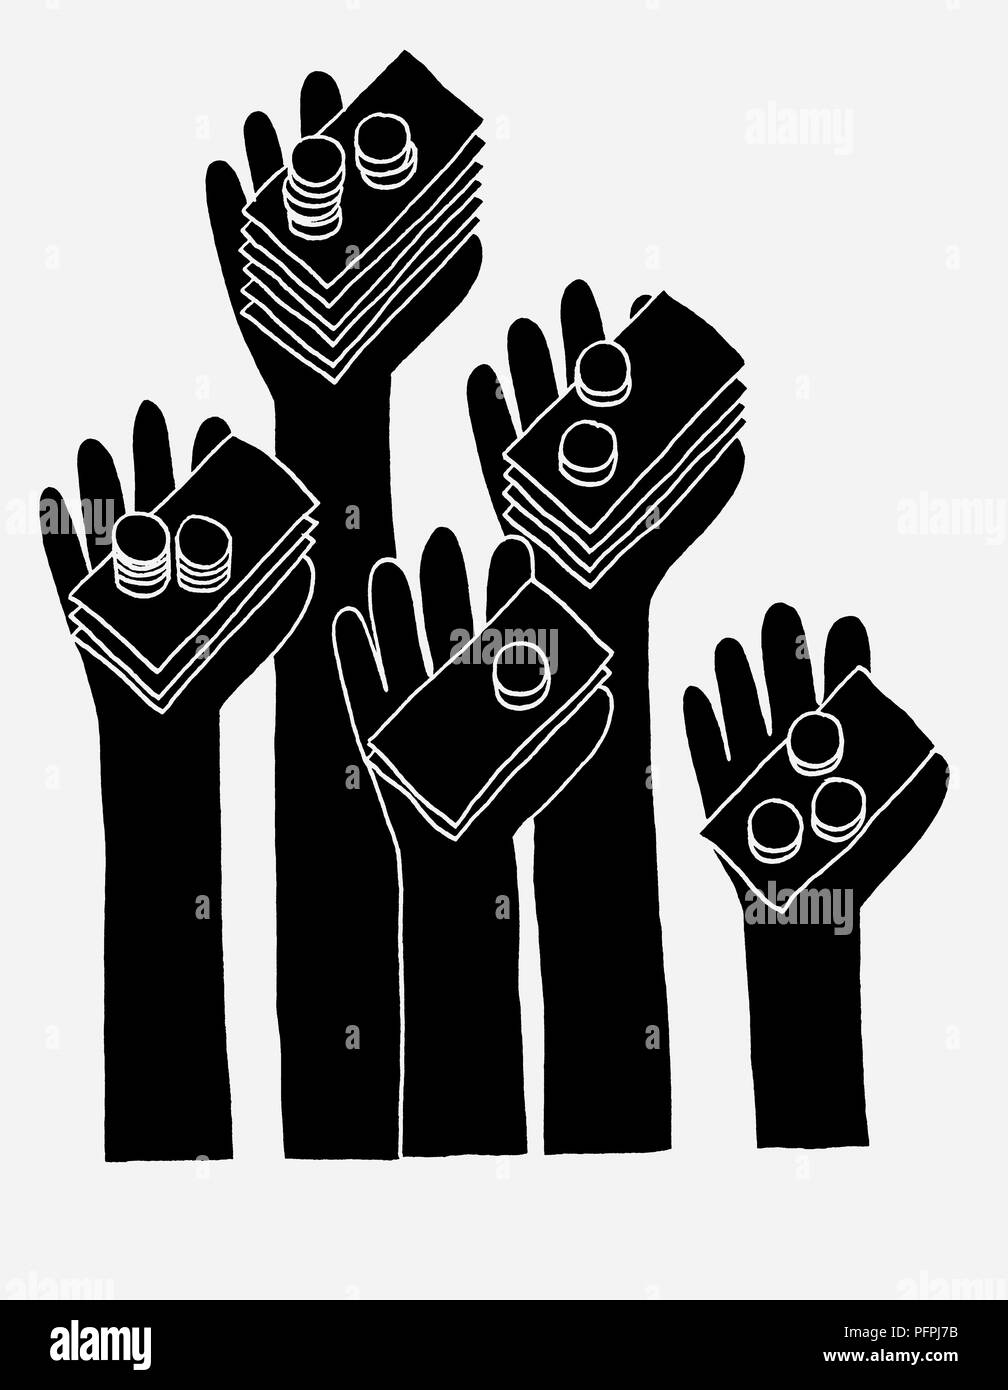 Bianco e nero illustrazione di mani tese detenere fondi Foto Stock